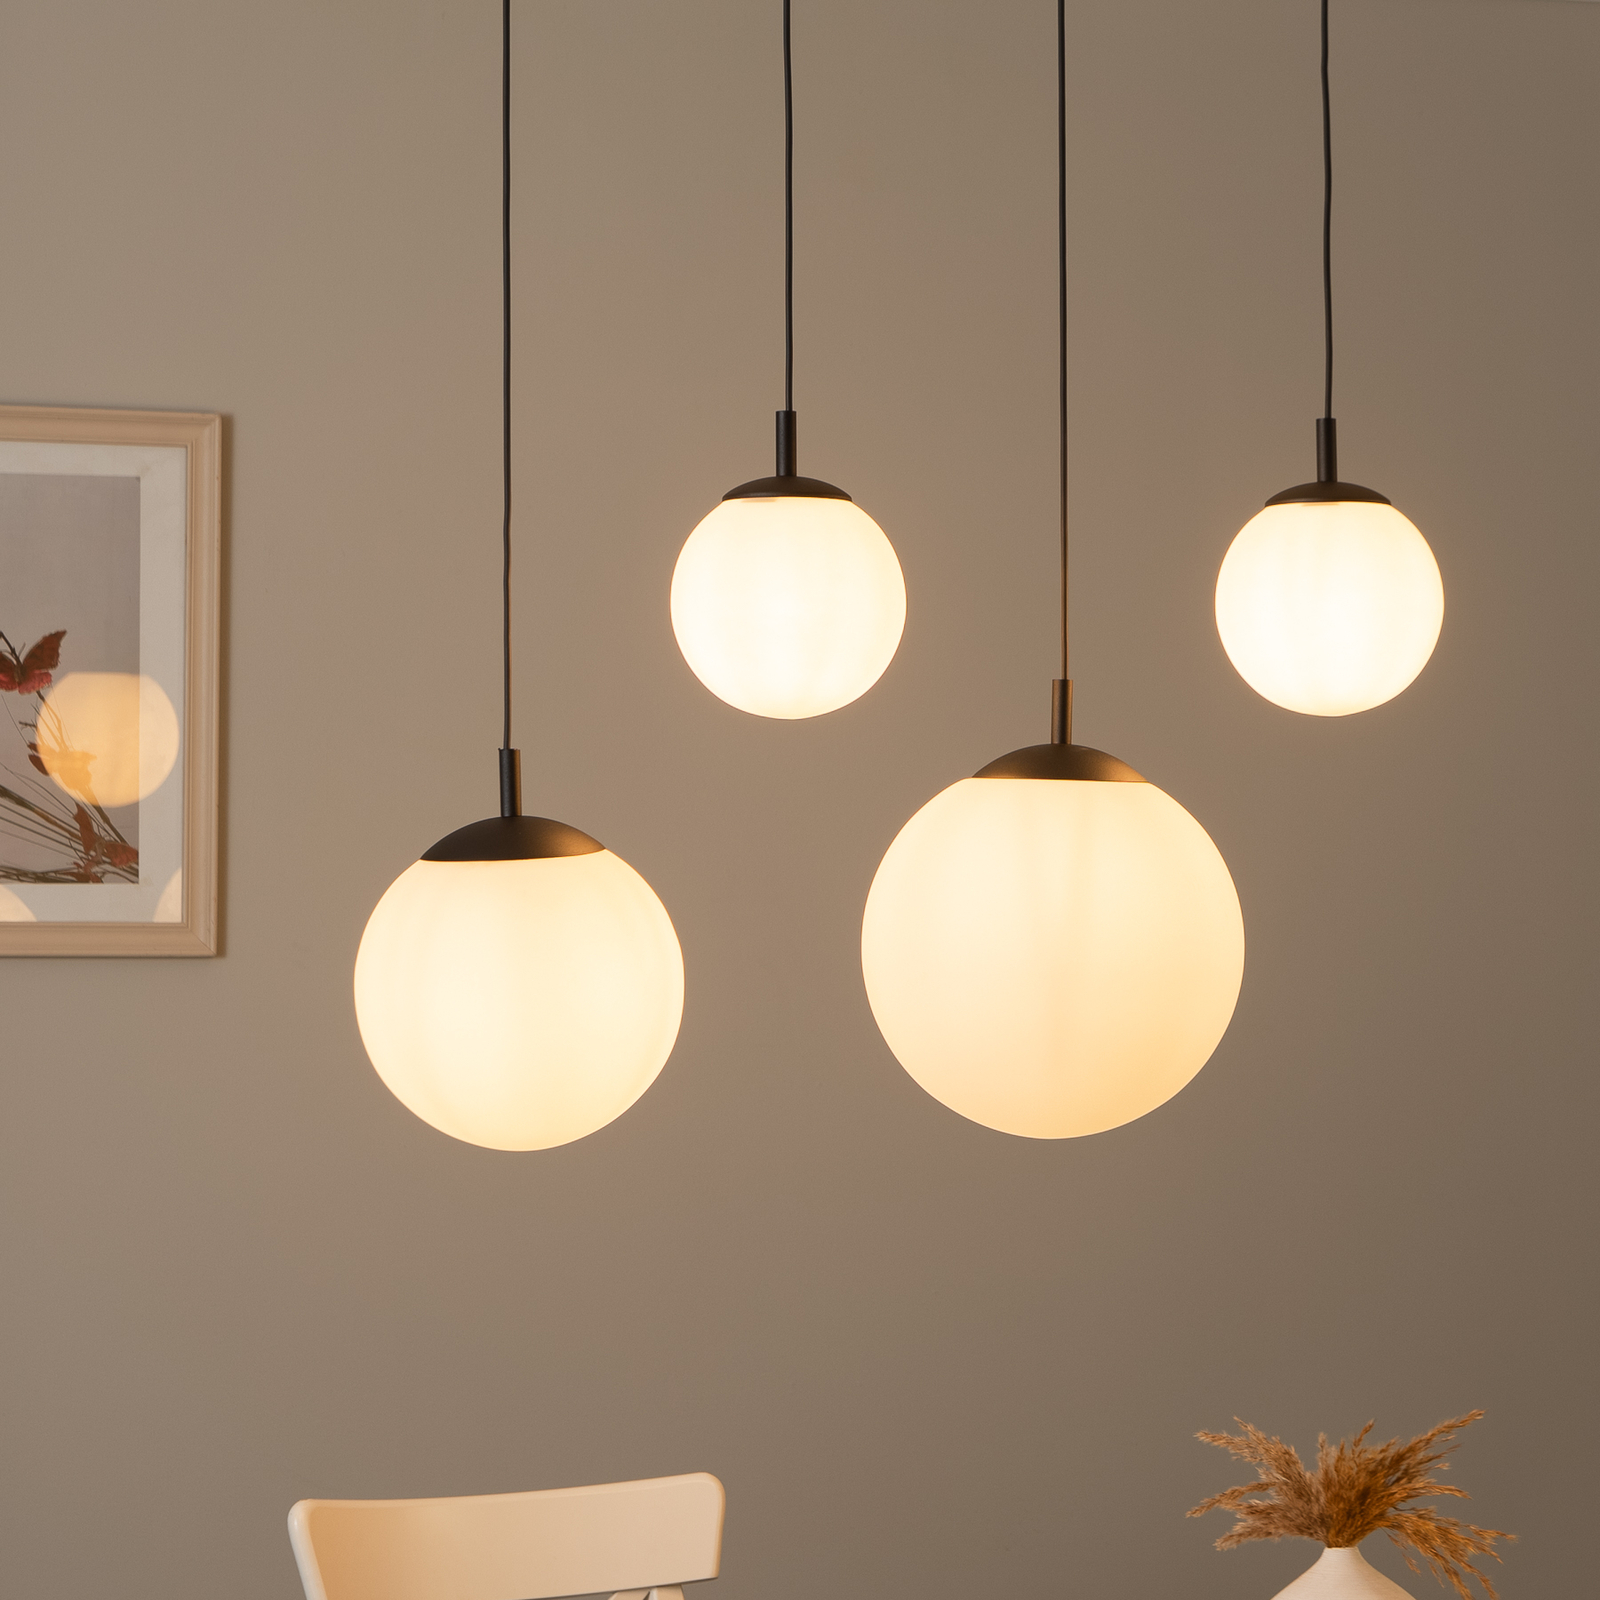 Hanglamp Esme, opaalglas, 4-lamps, lineair